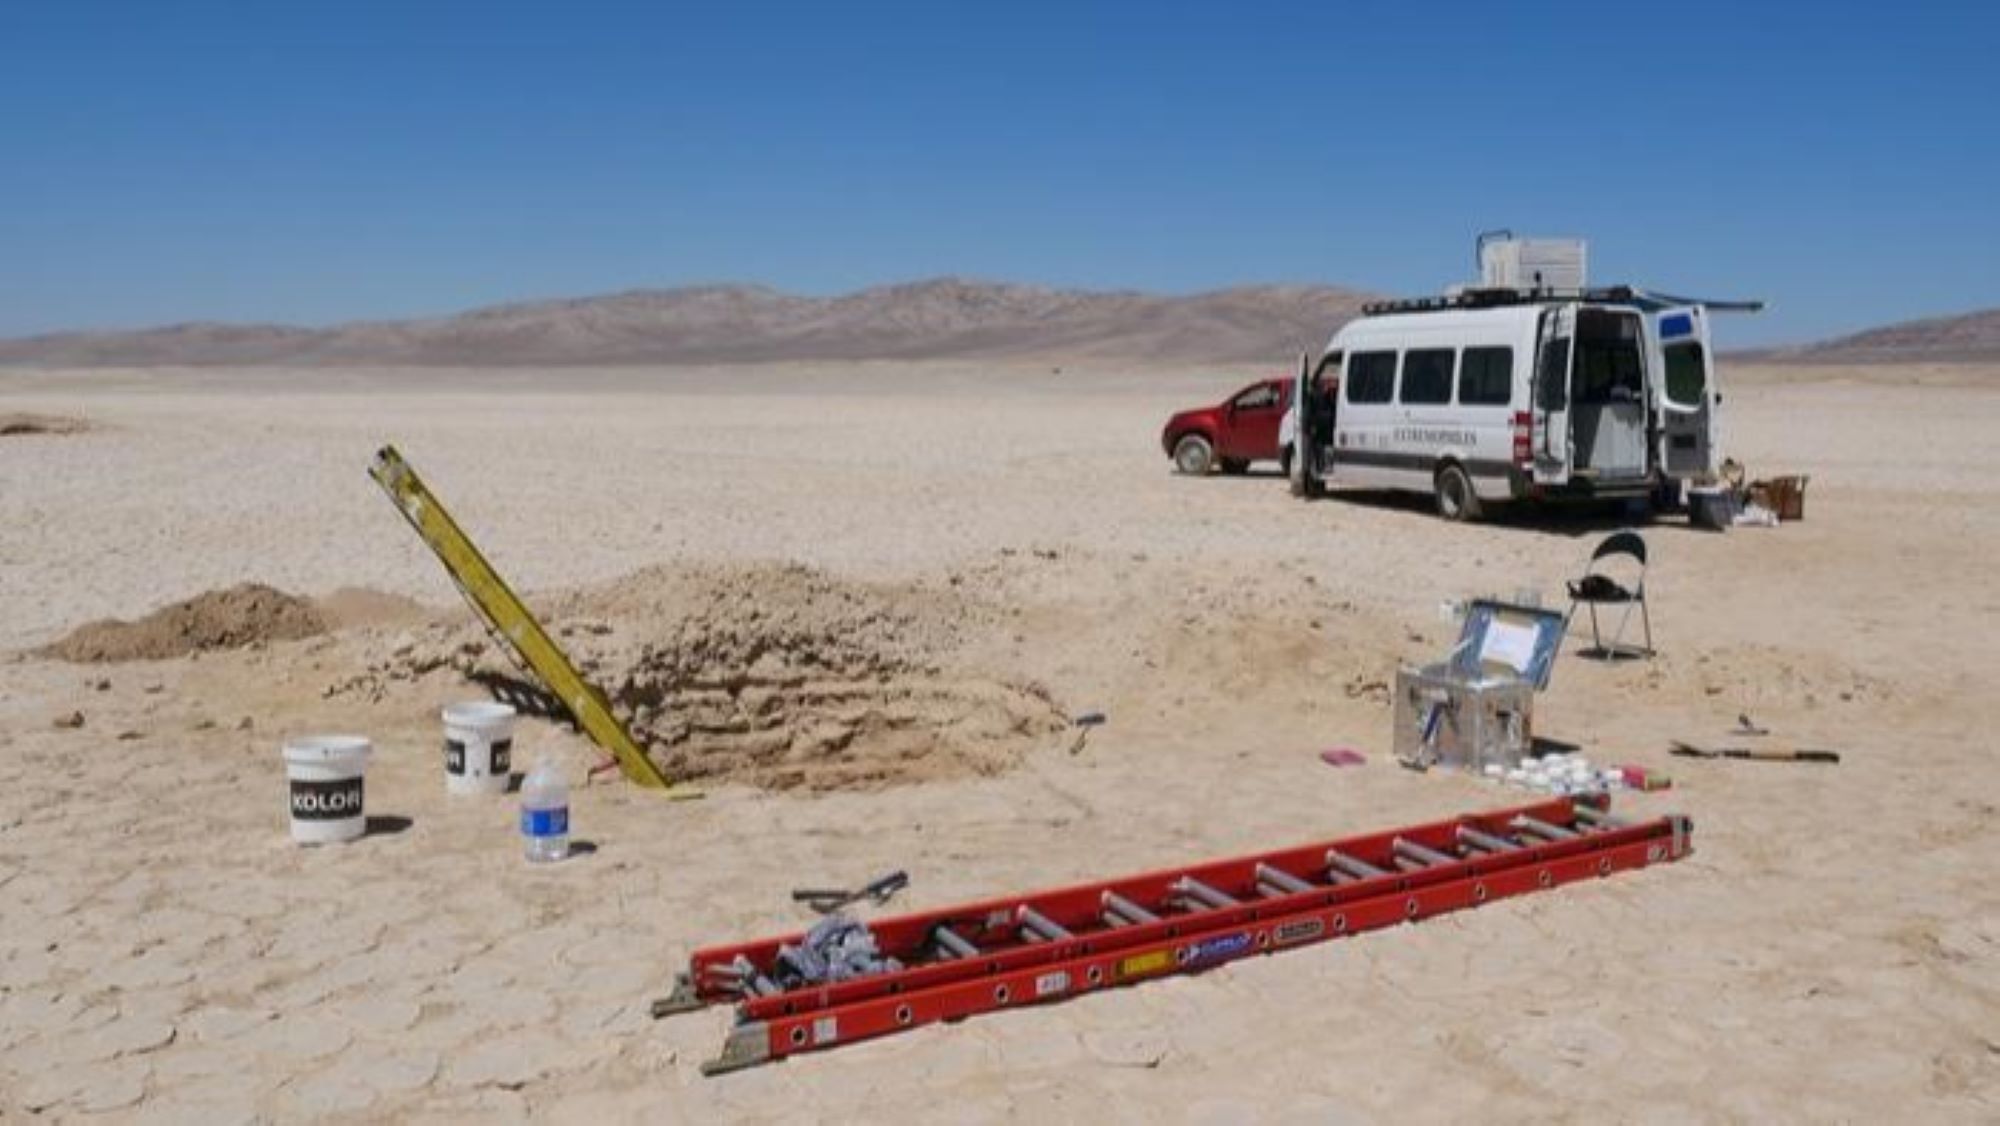 Мястото за изследване в пустинята Атакама, изобразено с камион и микробус на заден план и стълби и инструменти на преден план